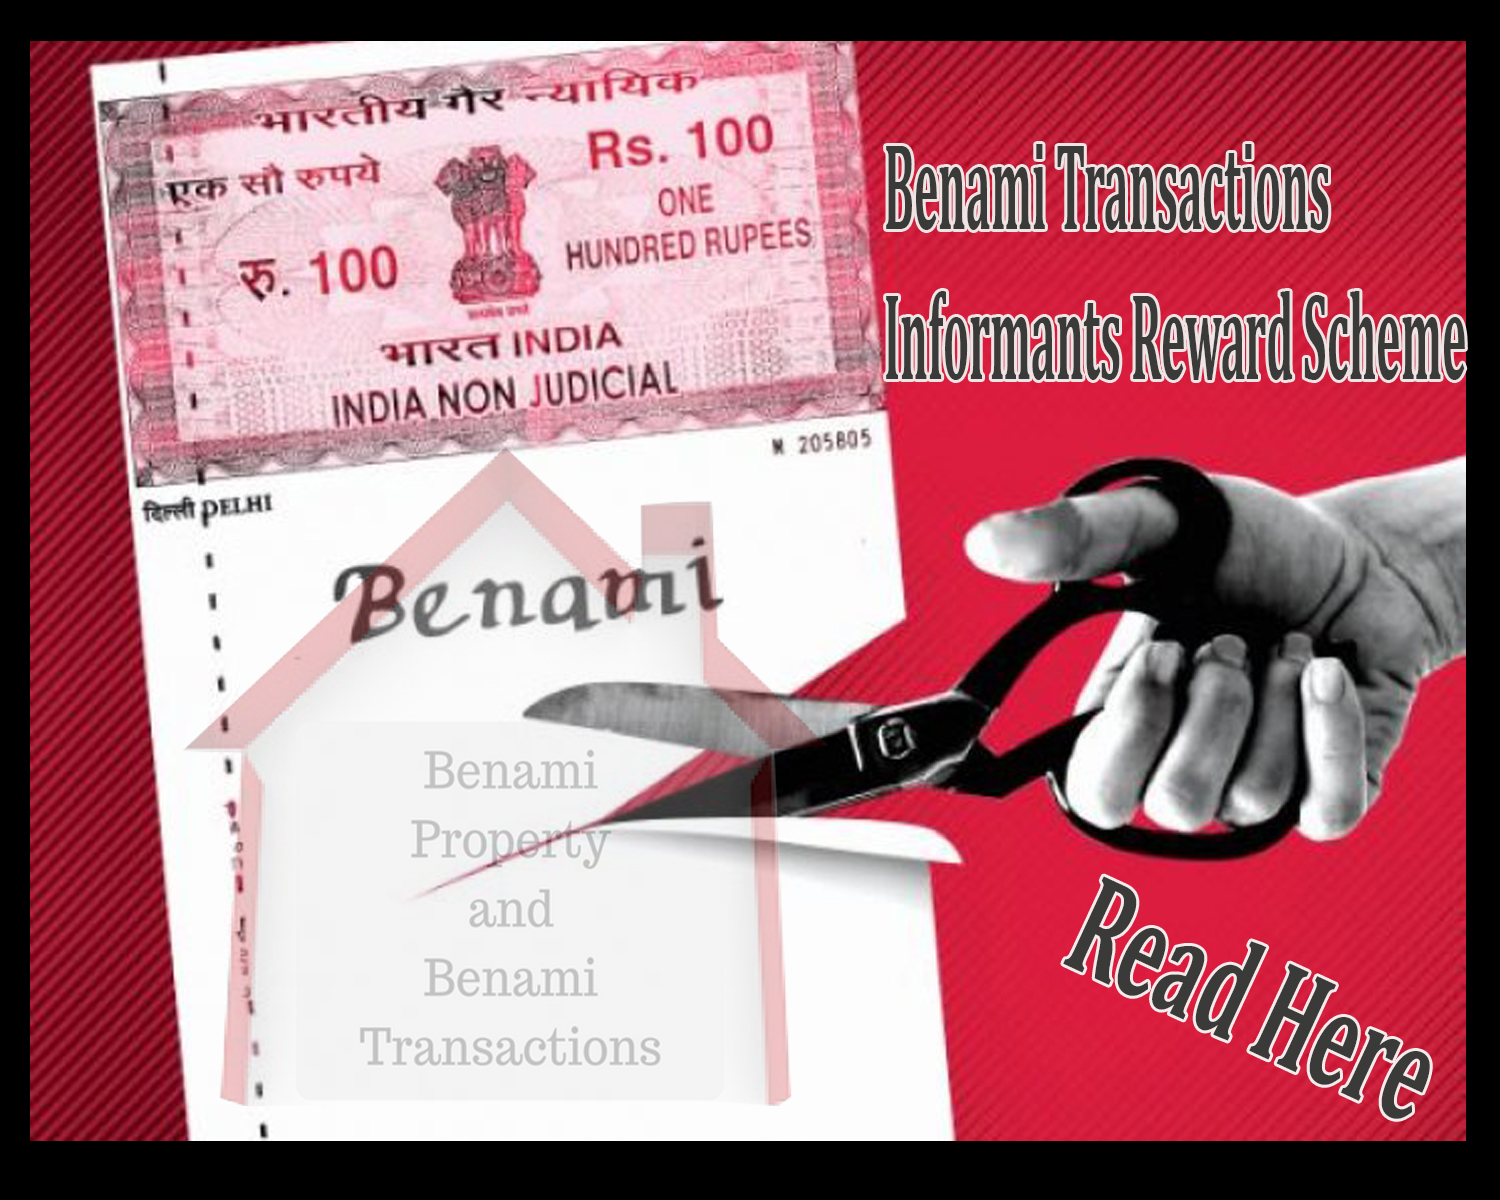 Benami Transactions Informants Reward Scheme